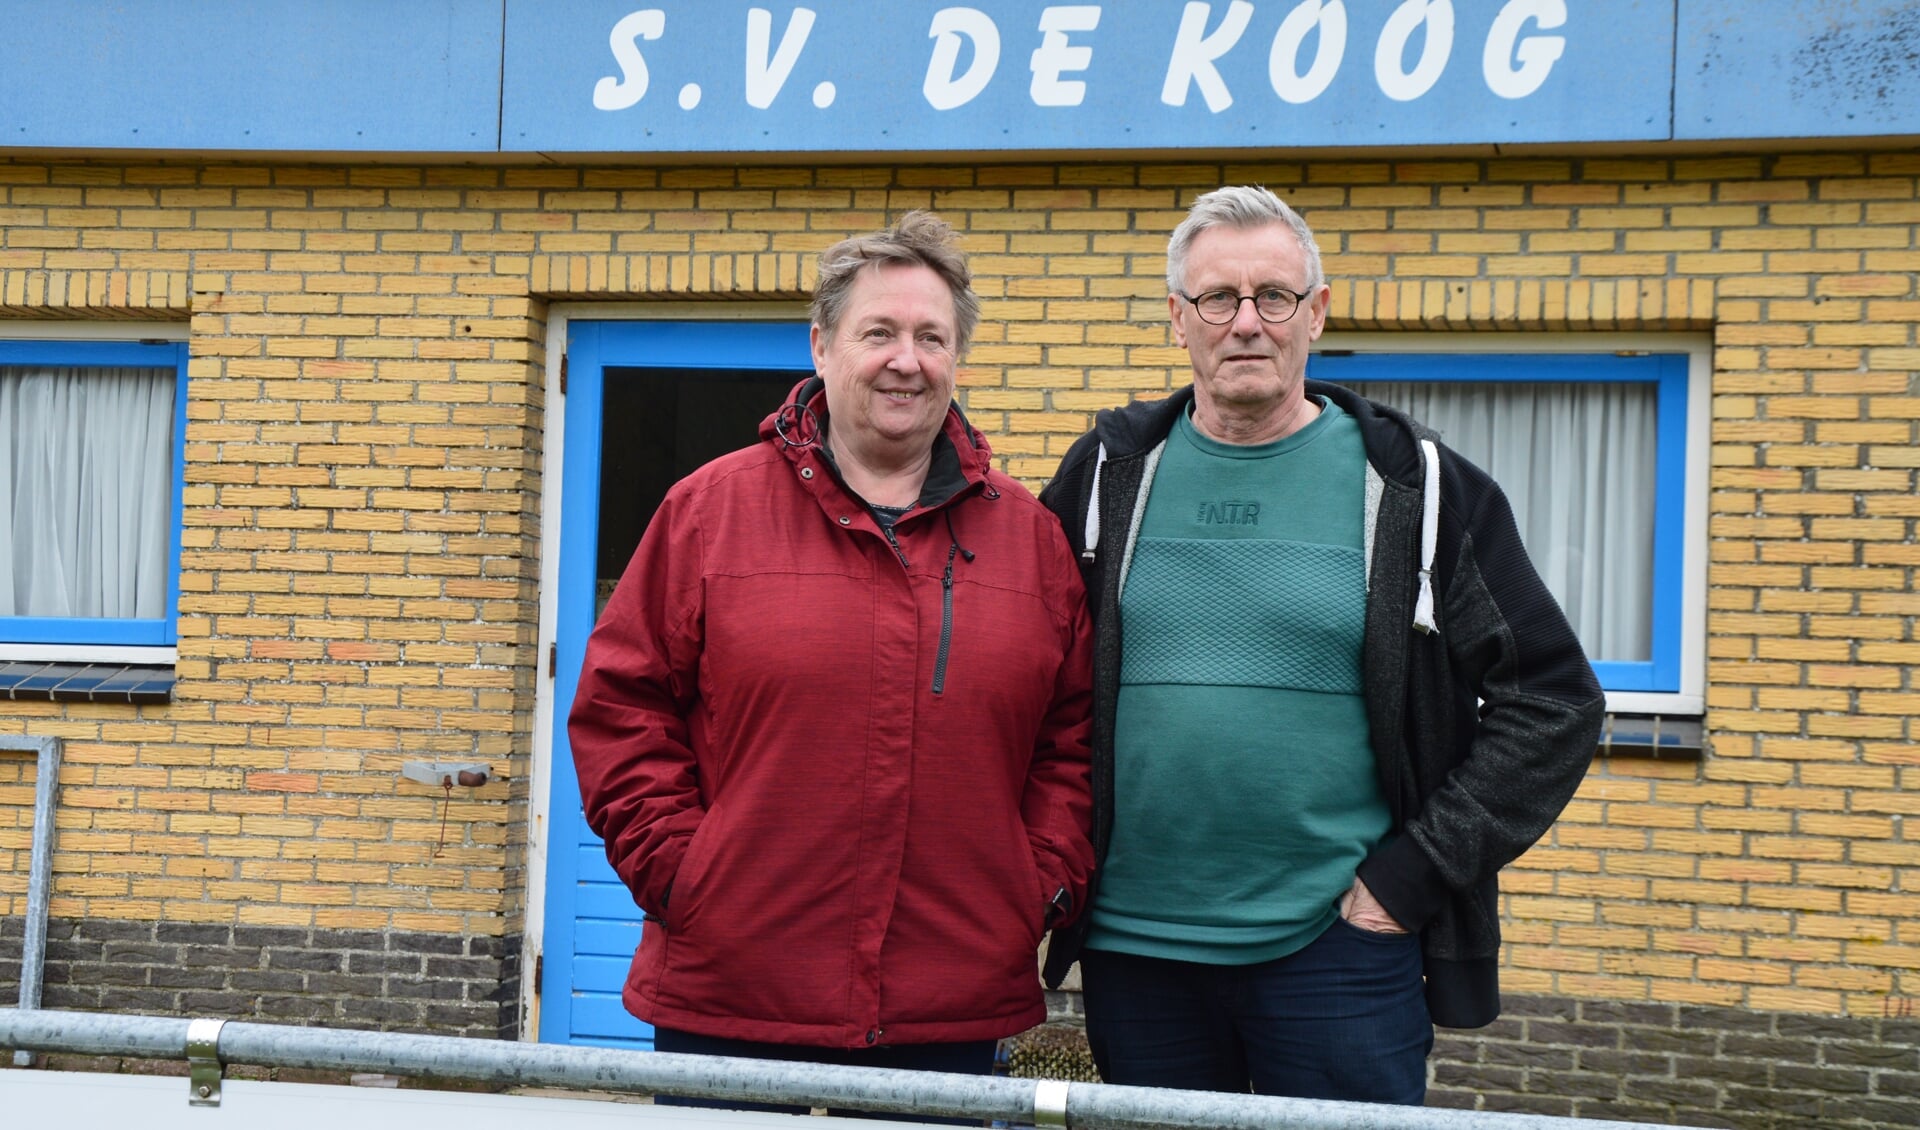 Veronica (Vroon) en Jan van Beek voor de kantine van voetbalclub S.V. De Koog. Rechts Jan na de Halve marathon van De Waal (2016), onder Vroon bij het ringsteken.